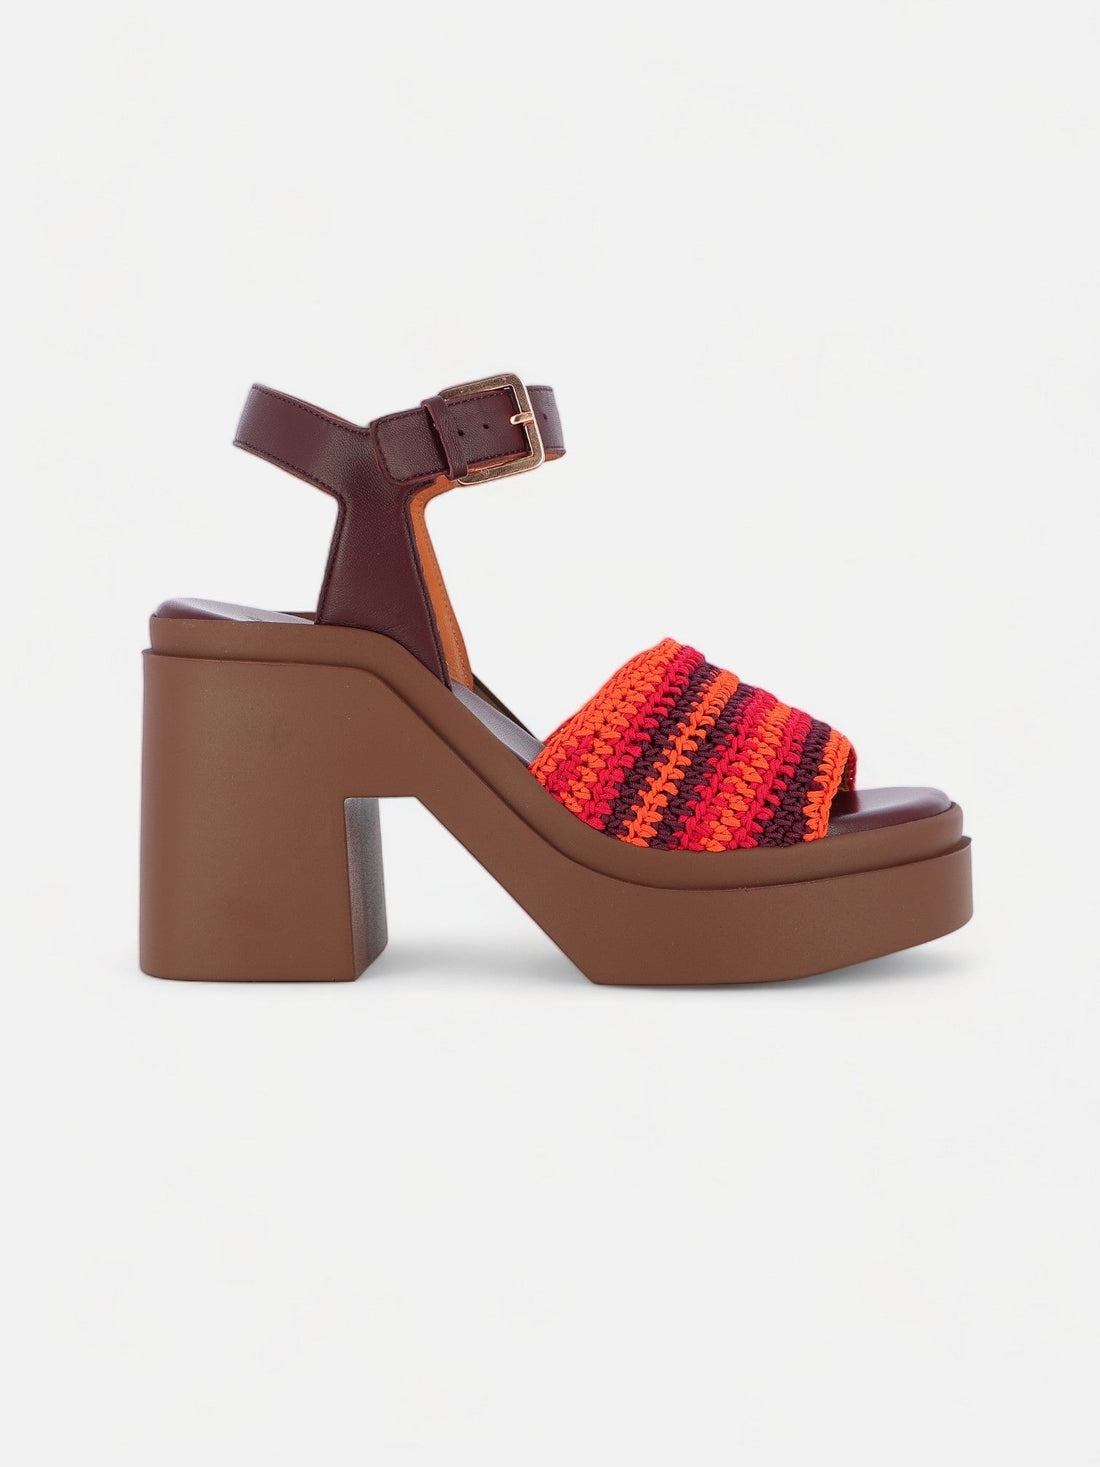 SANDALS - NOUST sandals, crochet red - 3606063982757 - Clergerie Paris - Europe